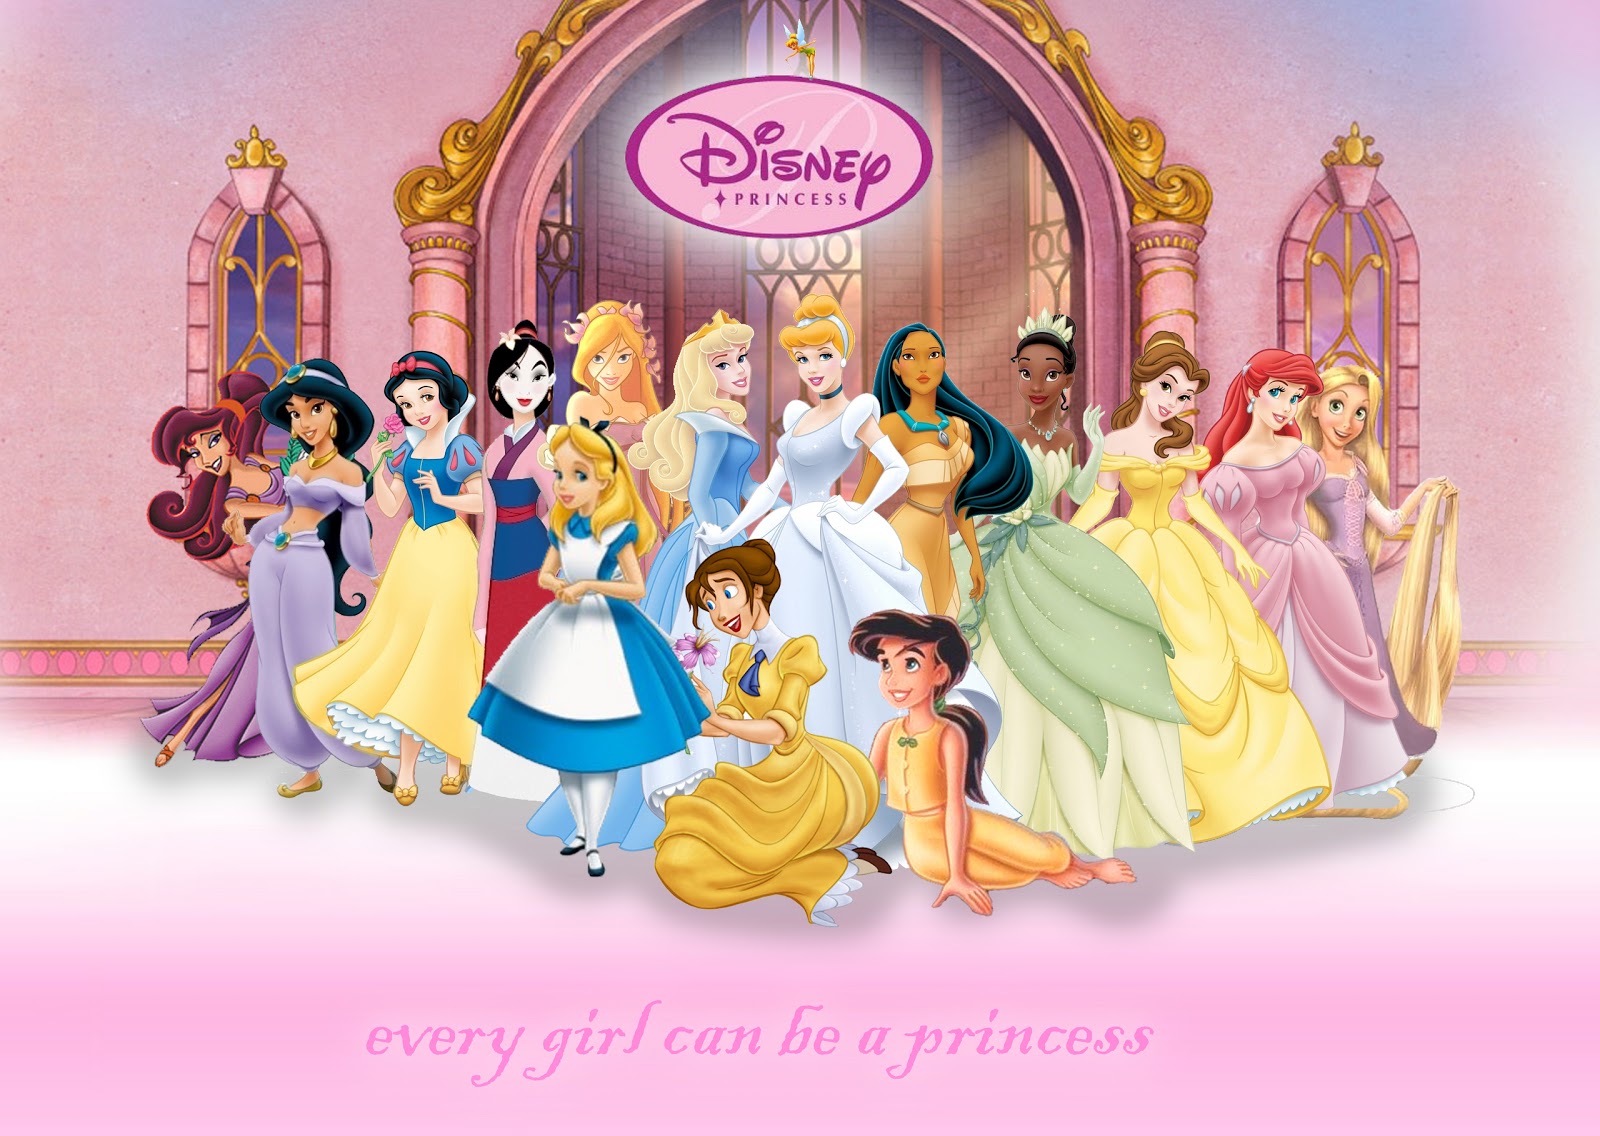 http://2.bp.blogspot.com/-GUsPj8aNXeE/UQQ6KglXy6I/AAAAAAAAAJ8/gHjfPDhZ8Do/s1600/princesses+disney.jpg